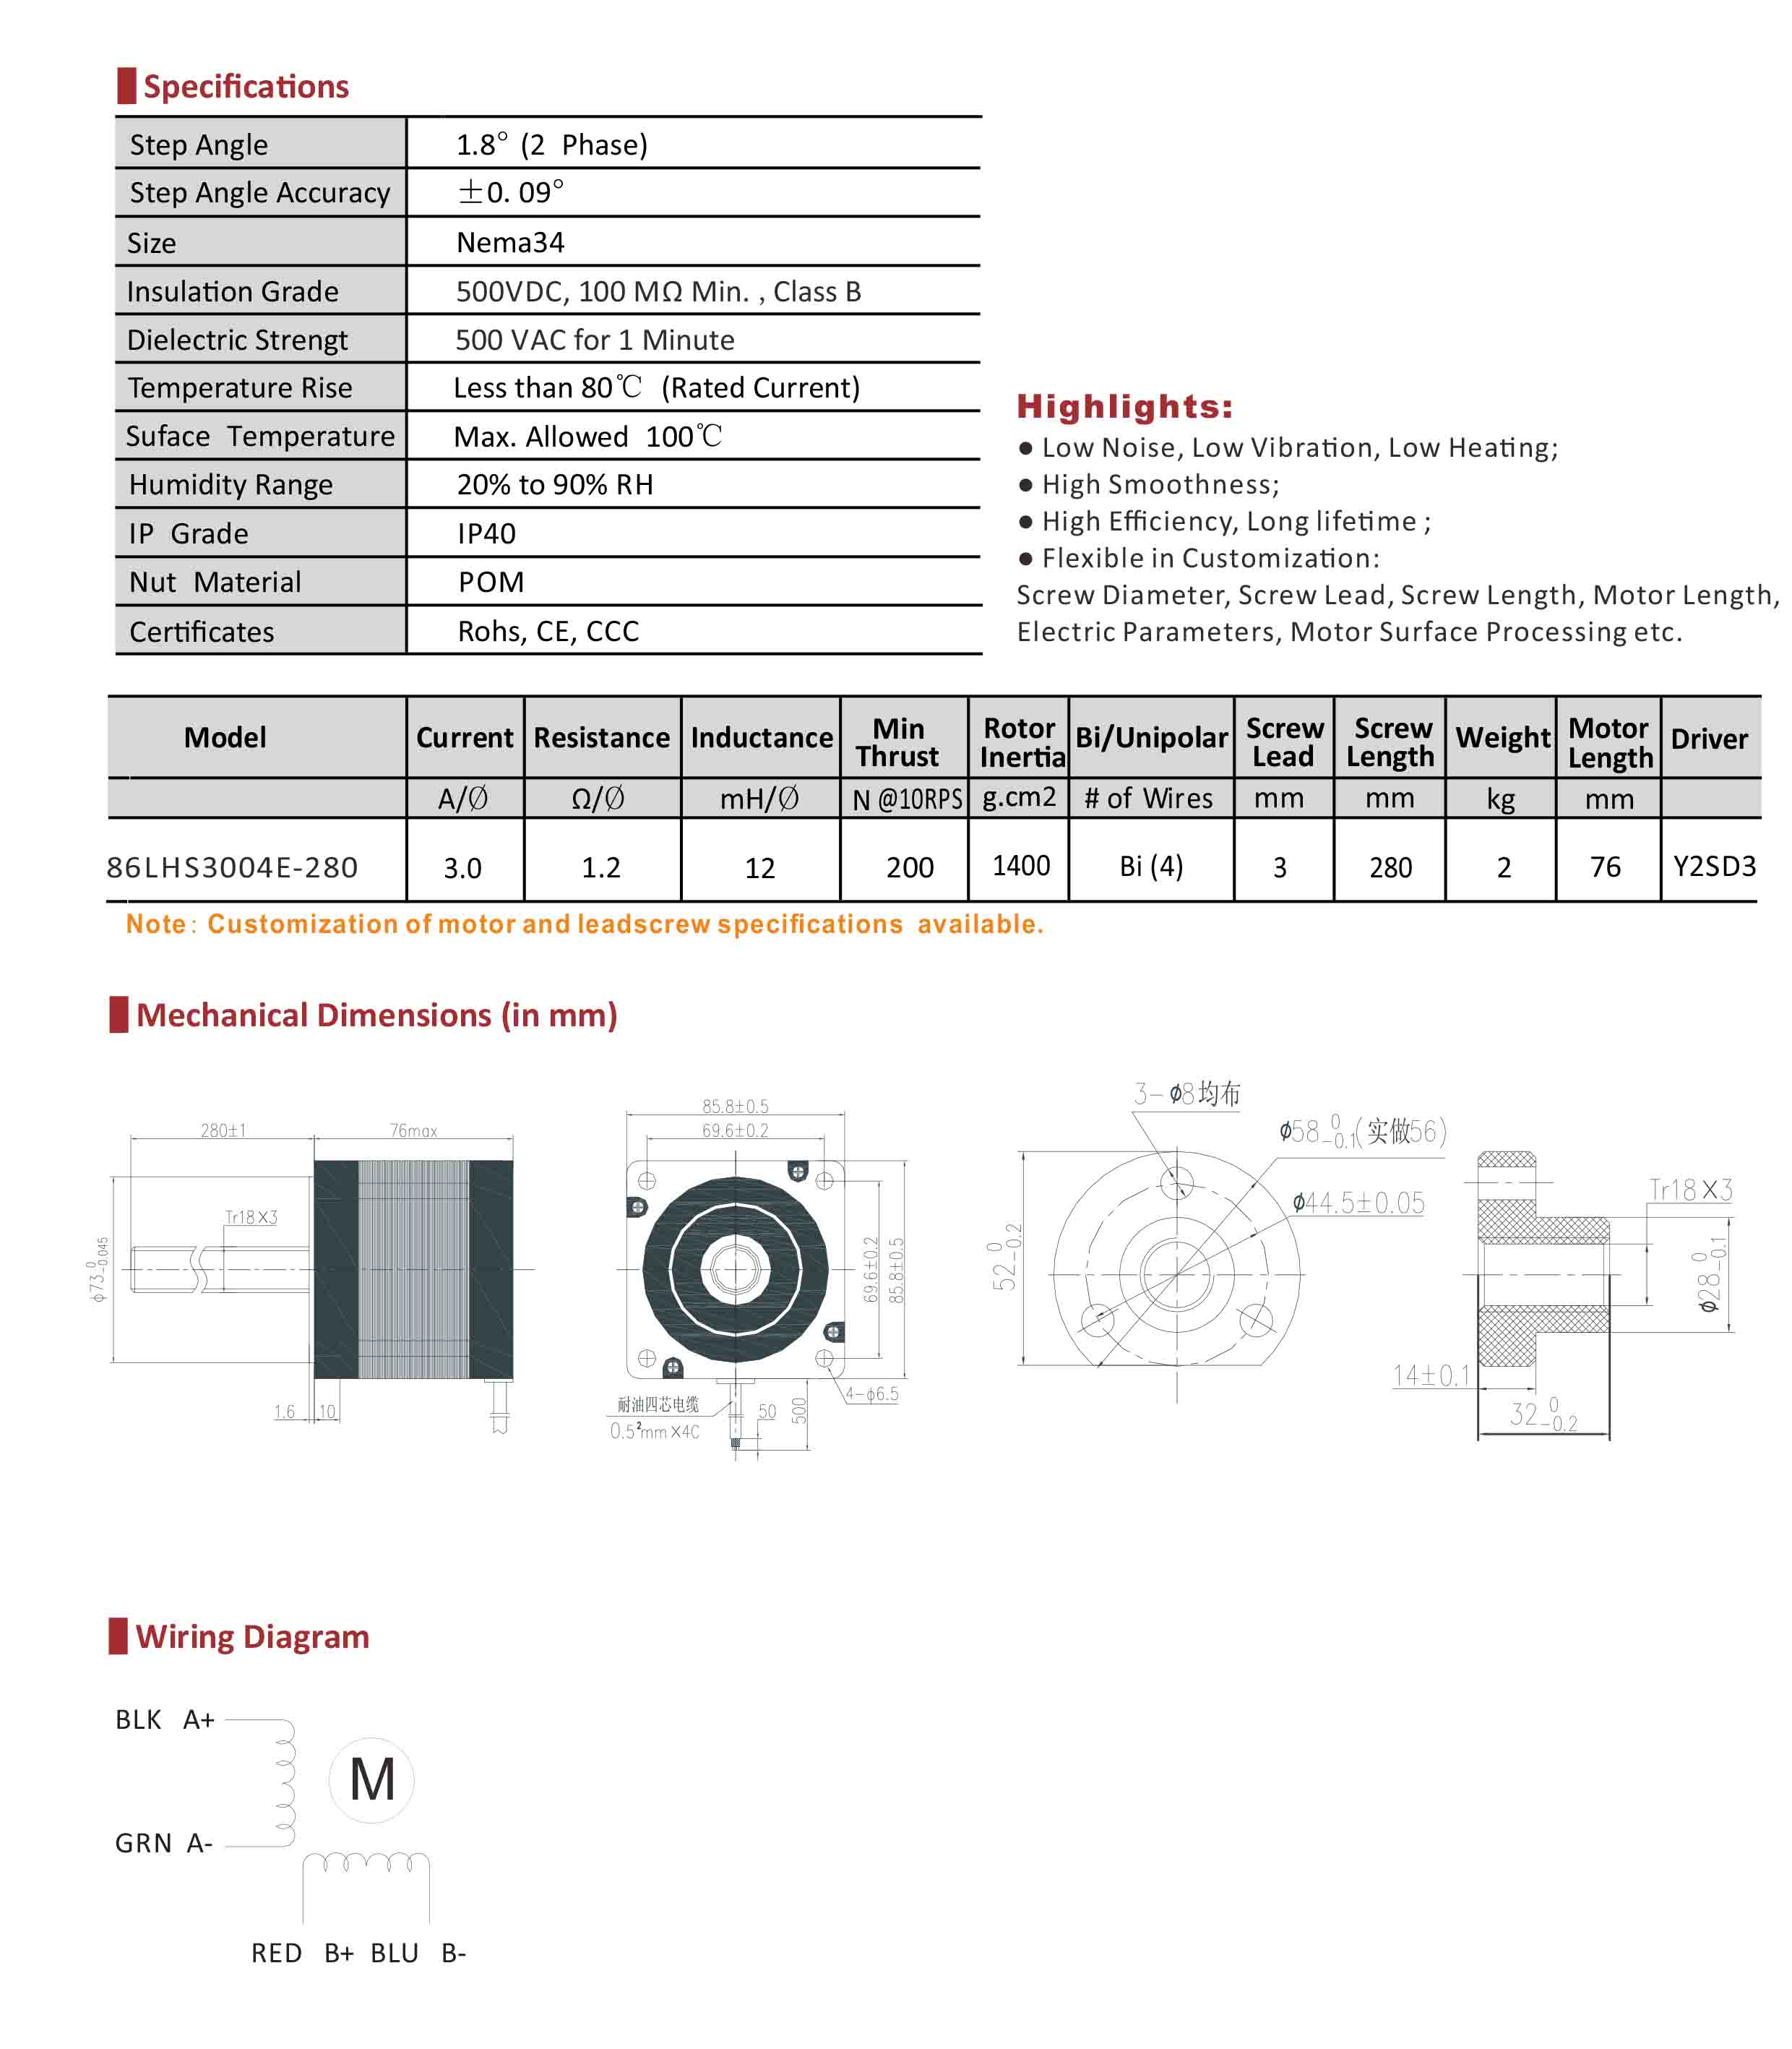 86LHS3004E-280 Hybrid Linear Stepper Motor Data Sheet.jpg